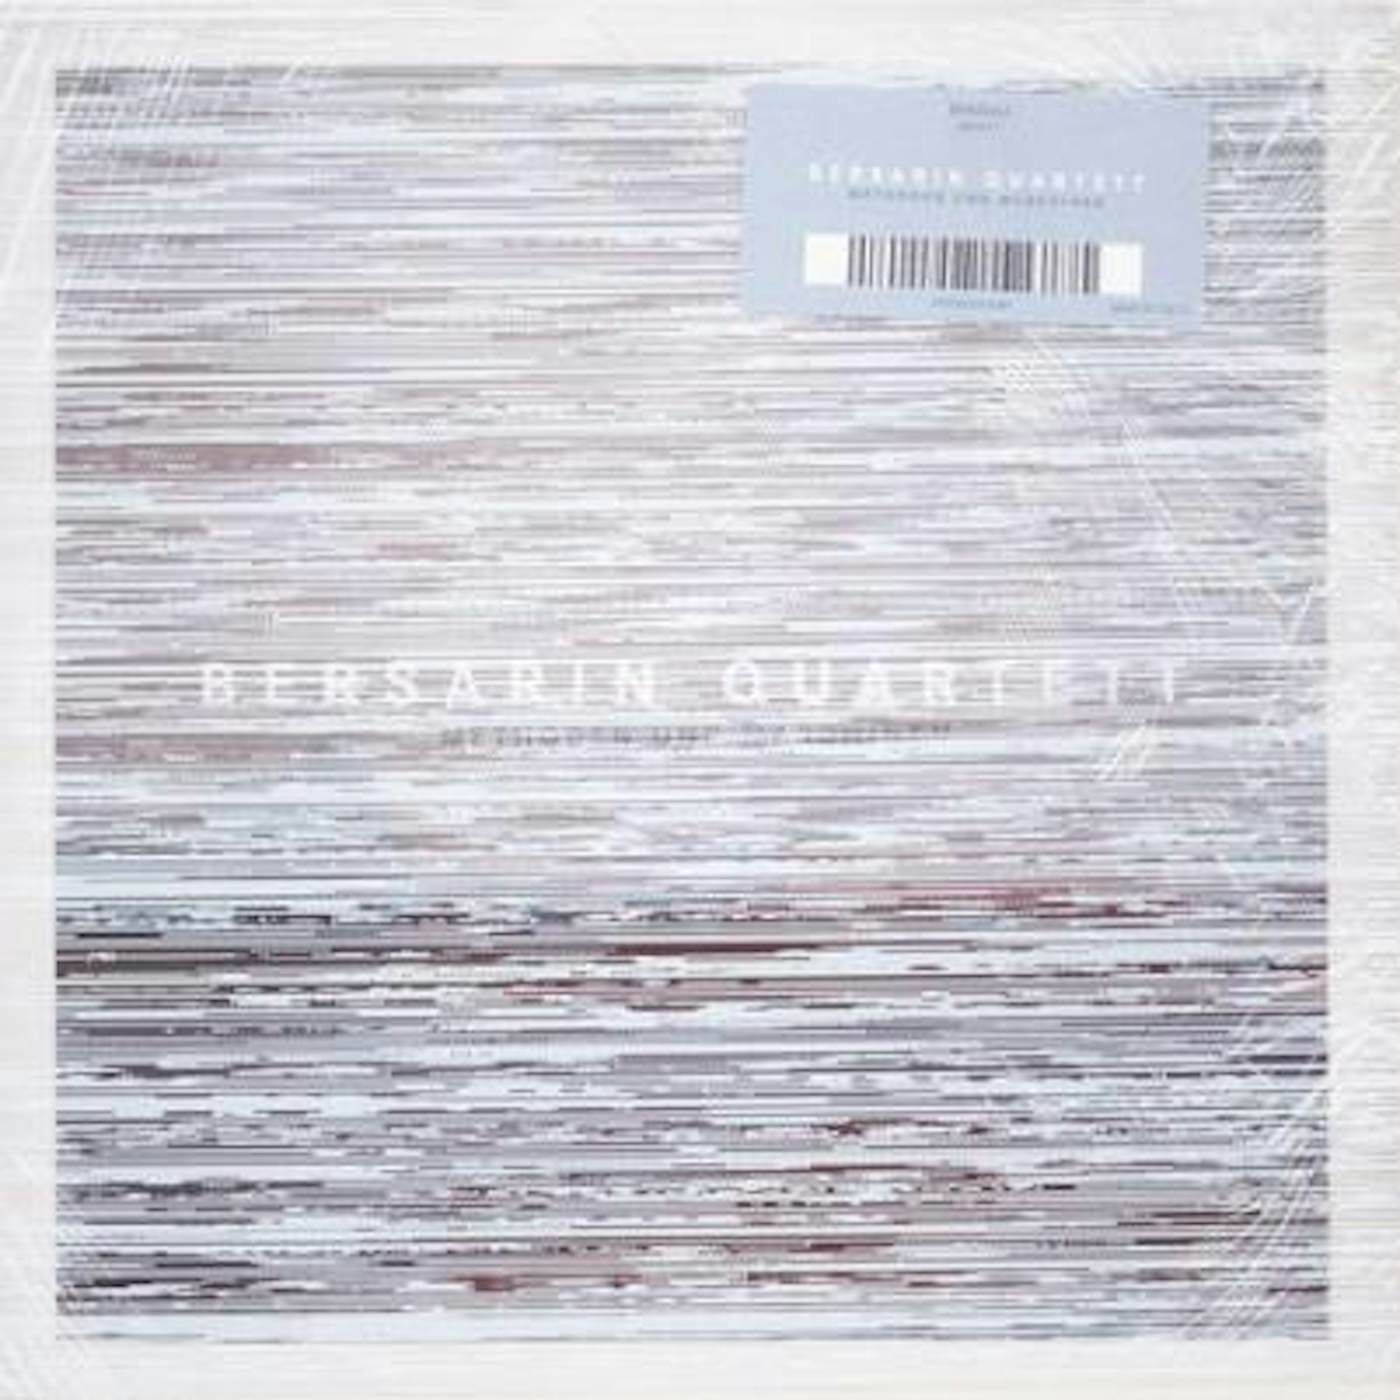 Bersarin Quartett METHODEN UND MASCHINEN CD